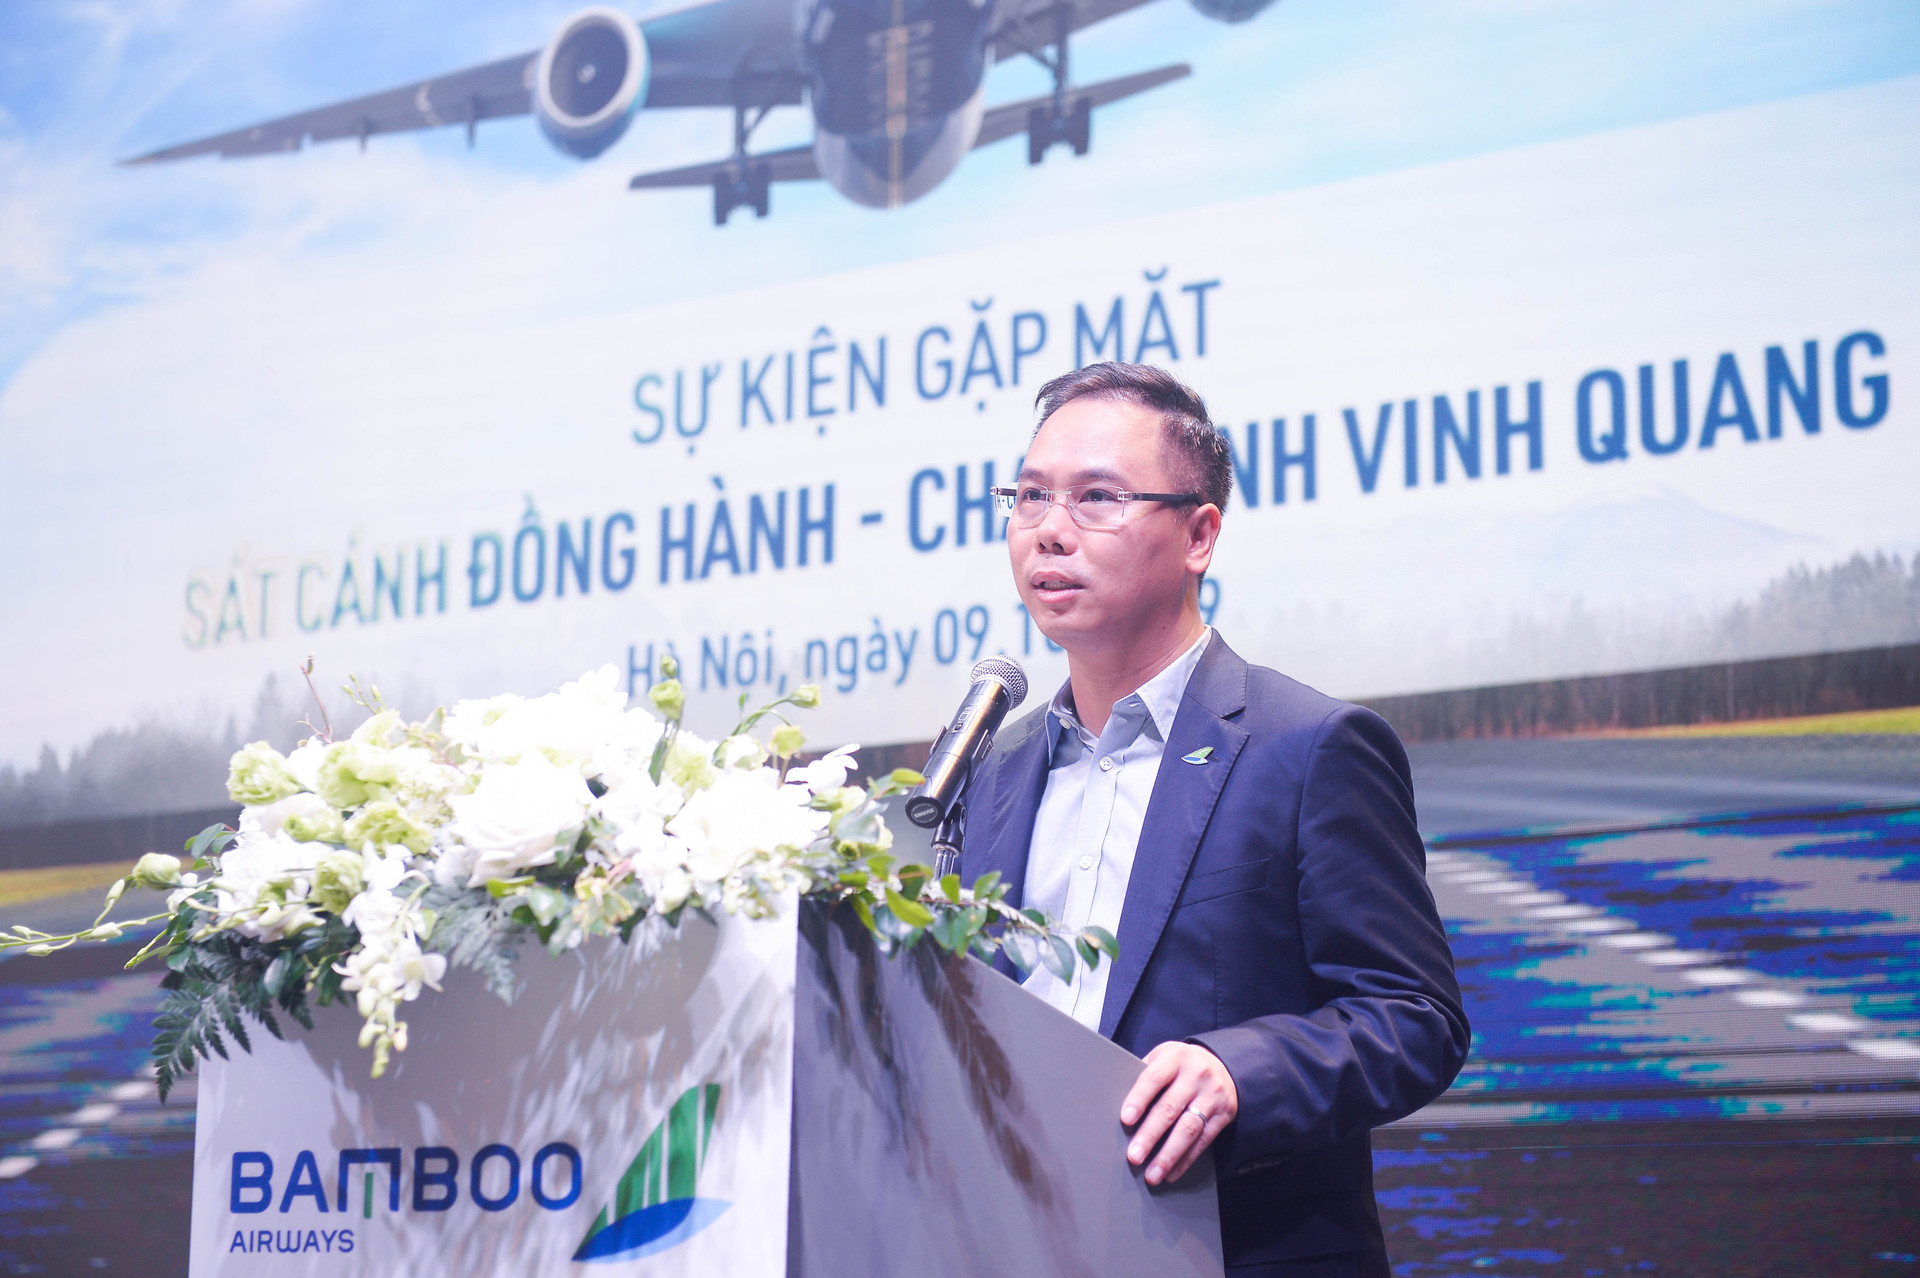 Bamboo Airways tổ chức sự kiện vinh danh top 100 đại lý xuất sắc nhất 3 miền